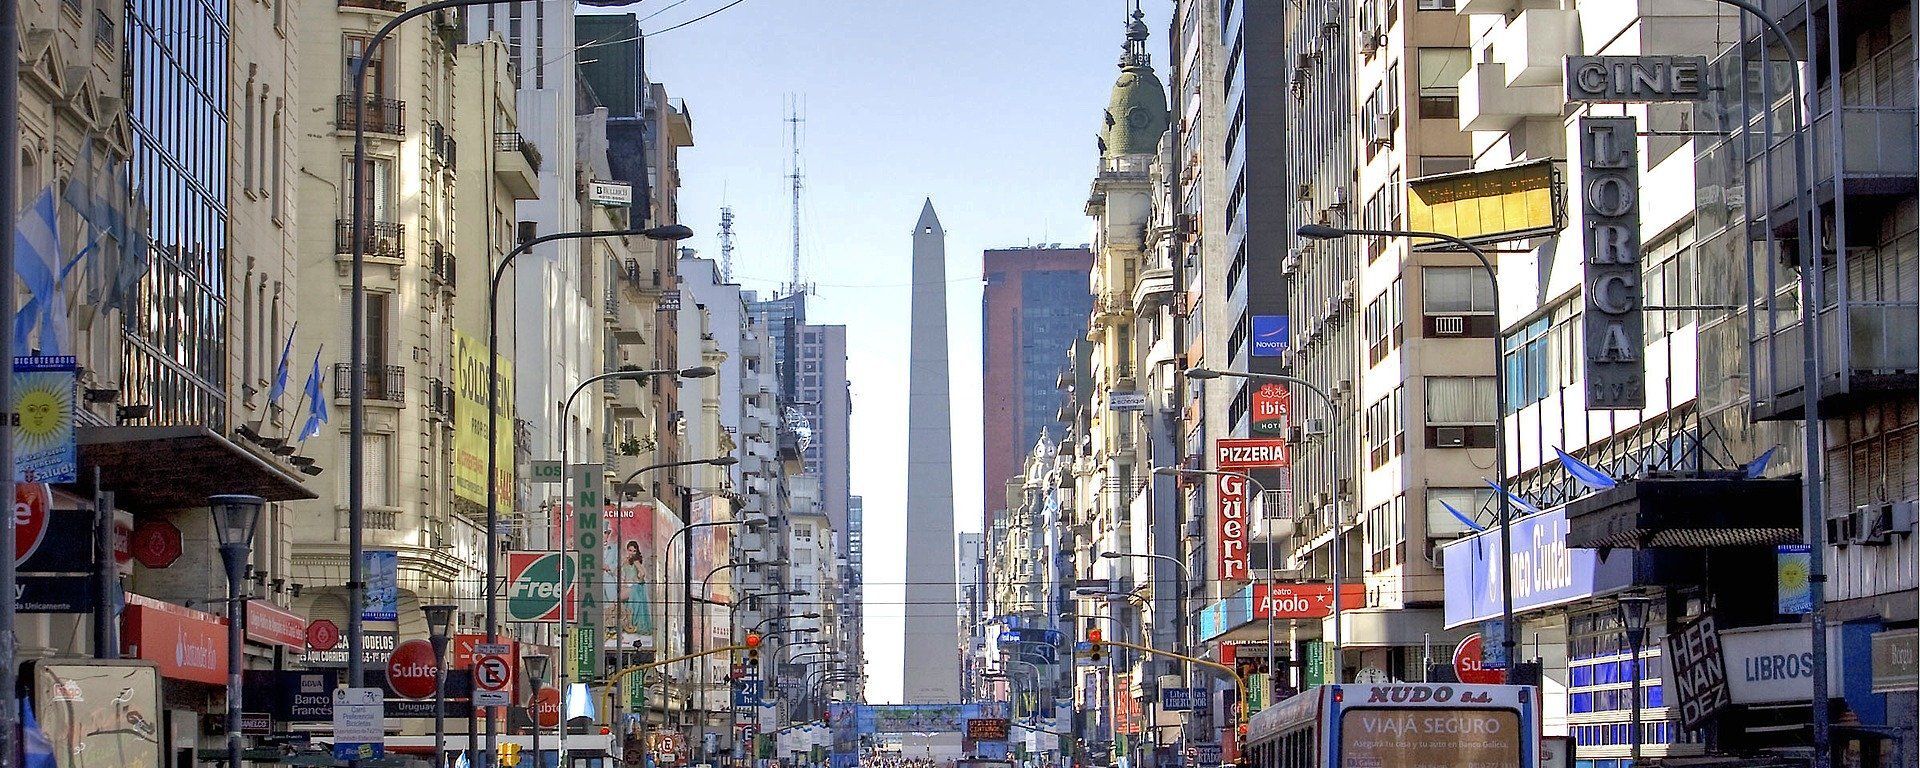 Una postal de la Ciudad de Buenos Aires, la capital de Argentina. Imagen referencial - Sputnik Mundo, 1920, 04.06.2021